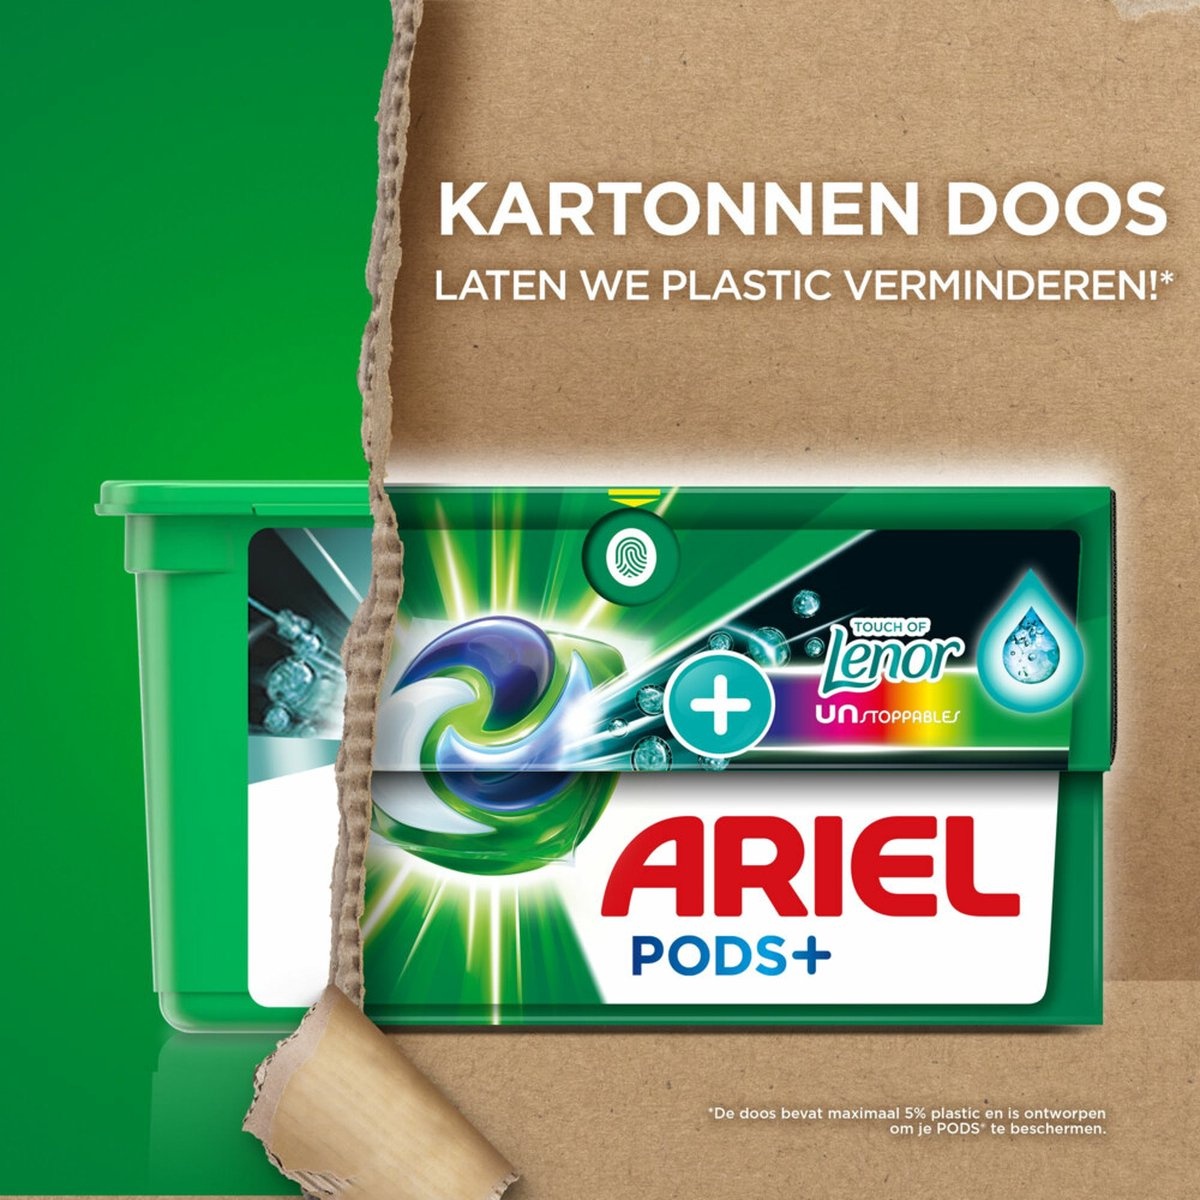 Ariel All-in-1 Pods Waschmittelkapseln Color Lenor Unstoppables 20 Stück - Verpackung beschädigt